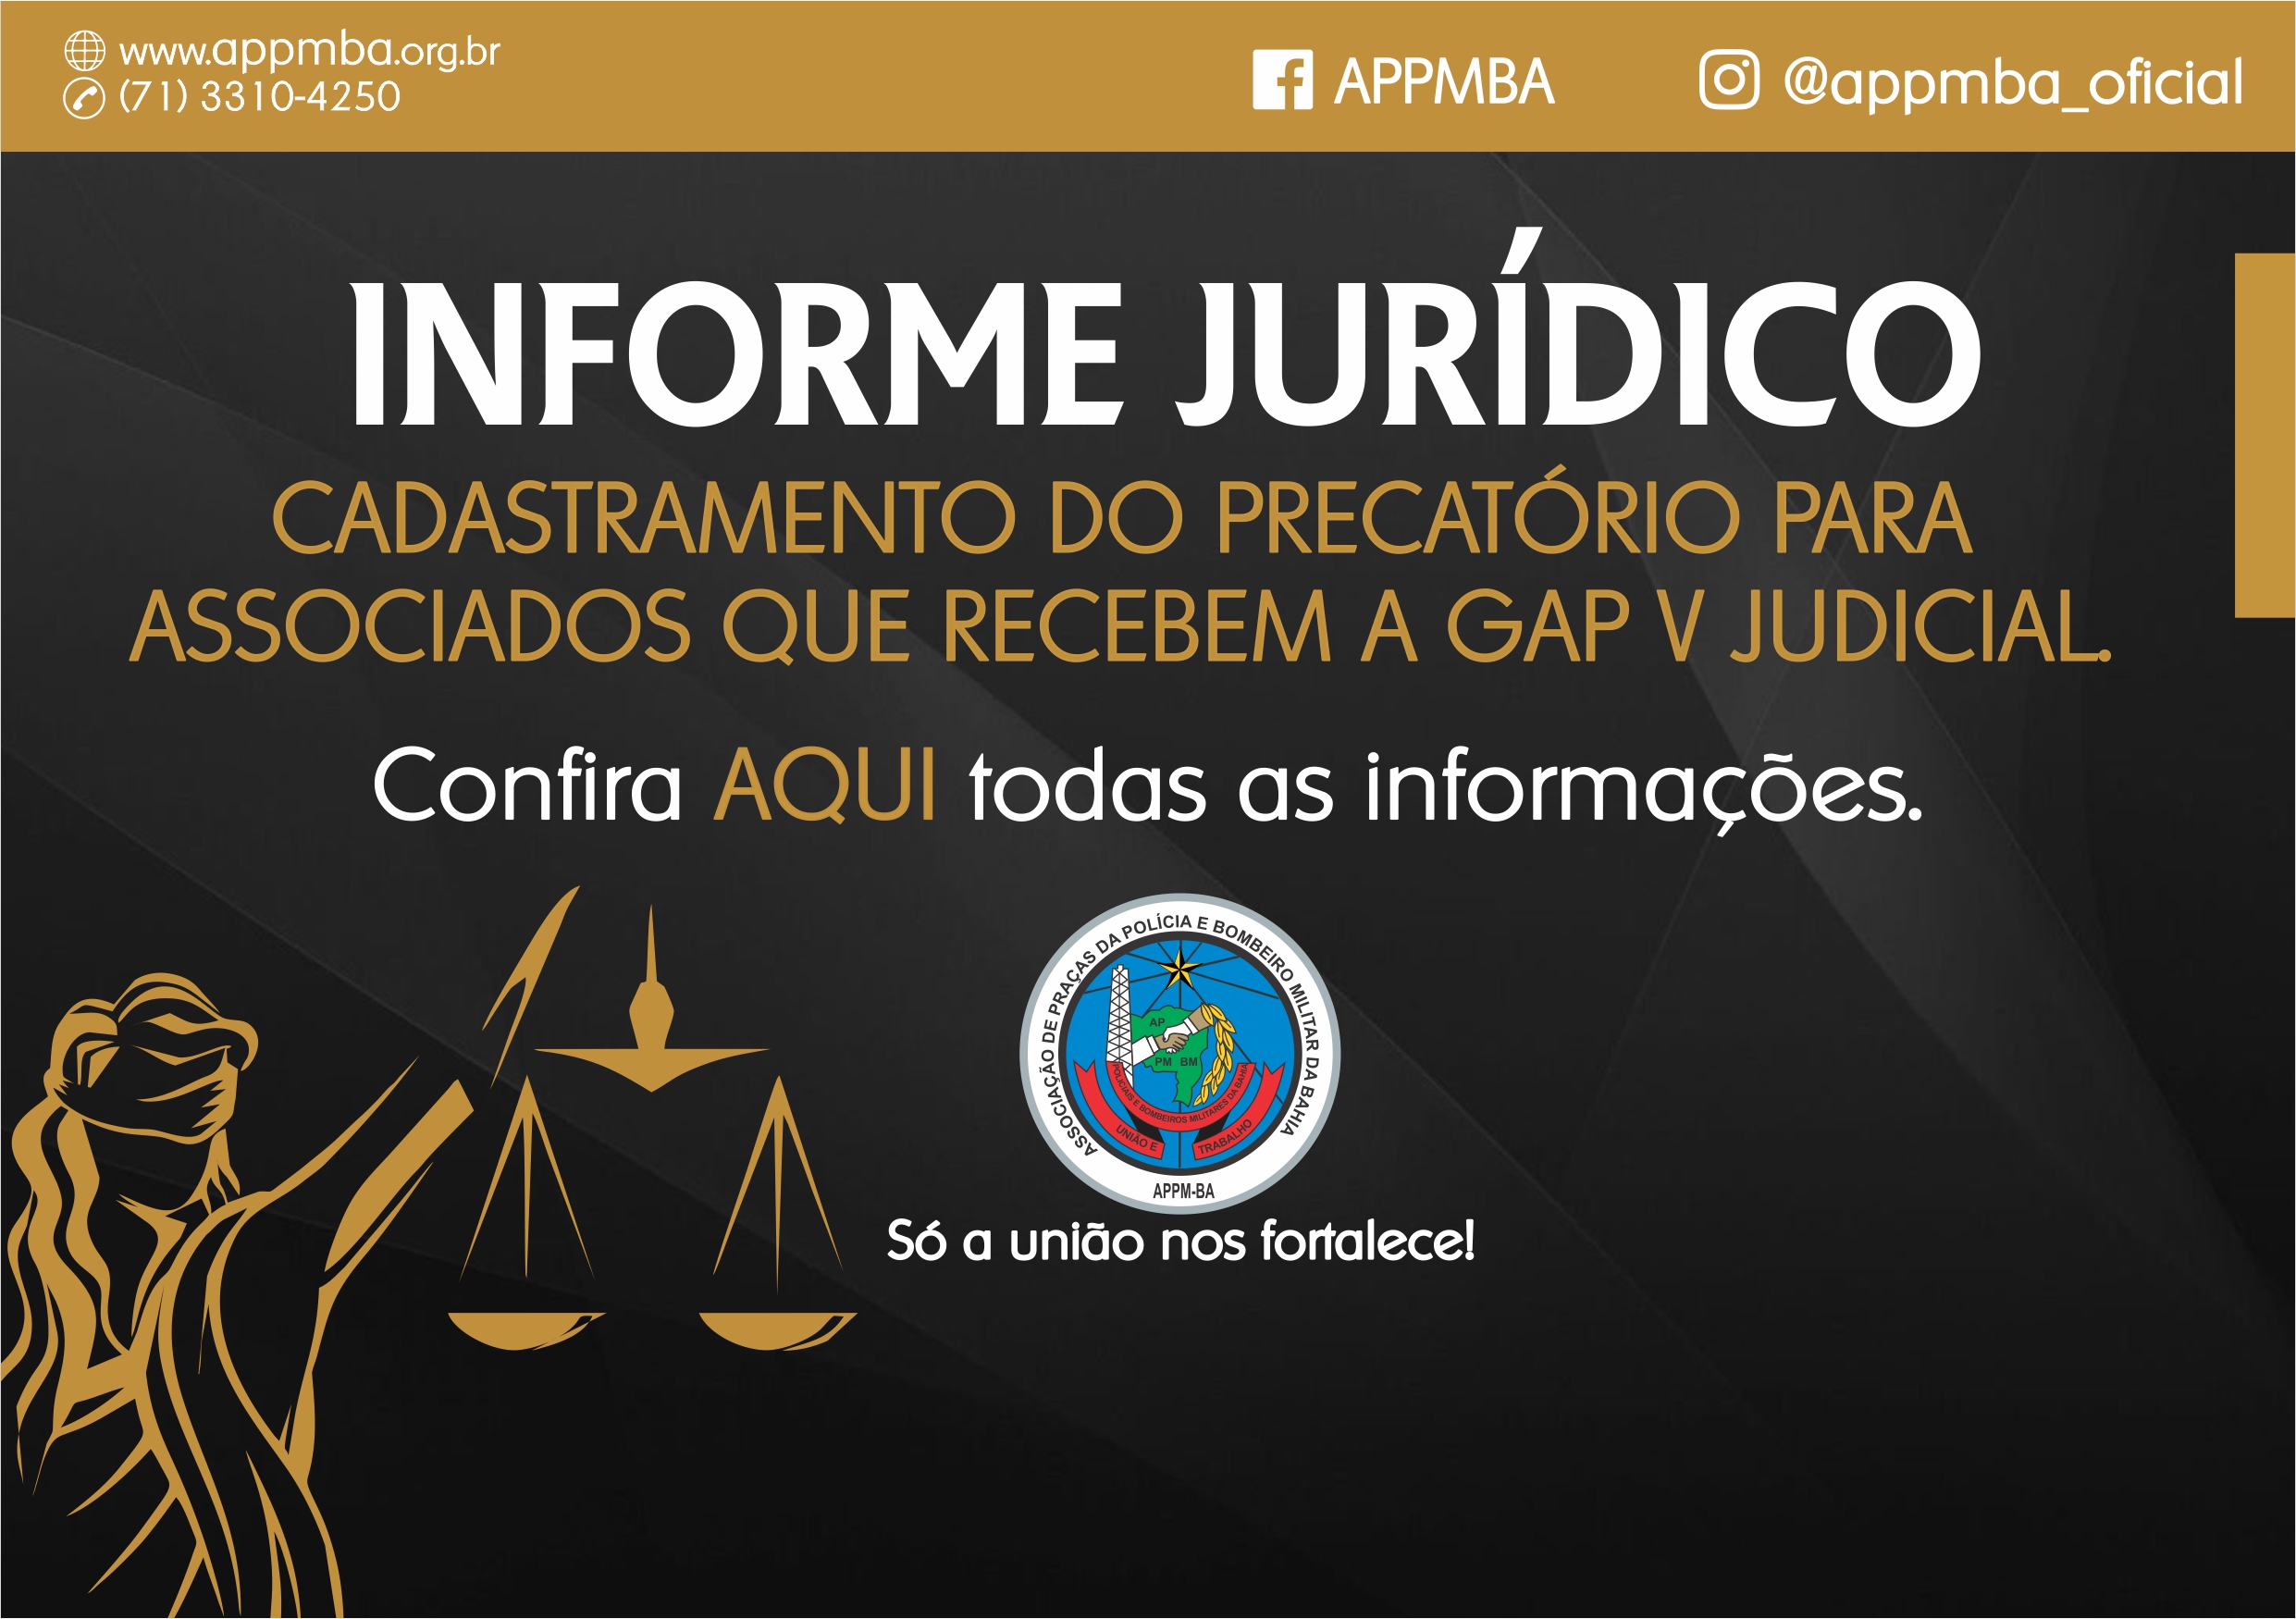 Cadastramento do Precatório para associados da APPMBA que recebem a GAP V judicial.